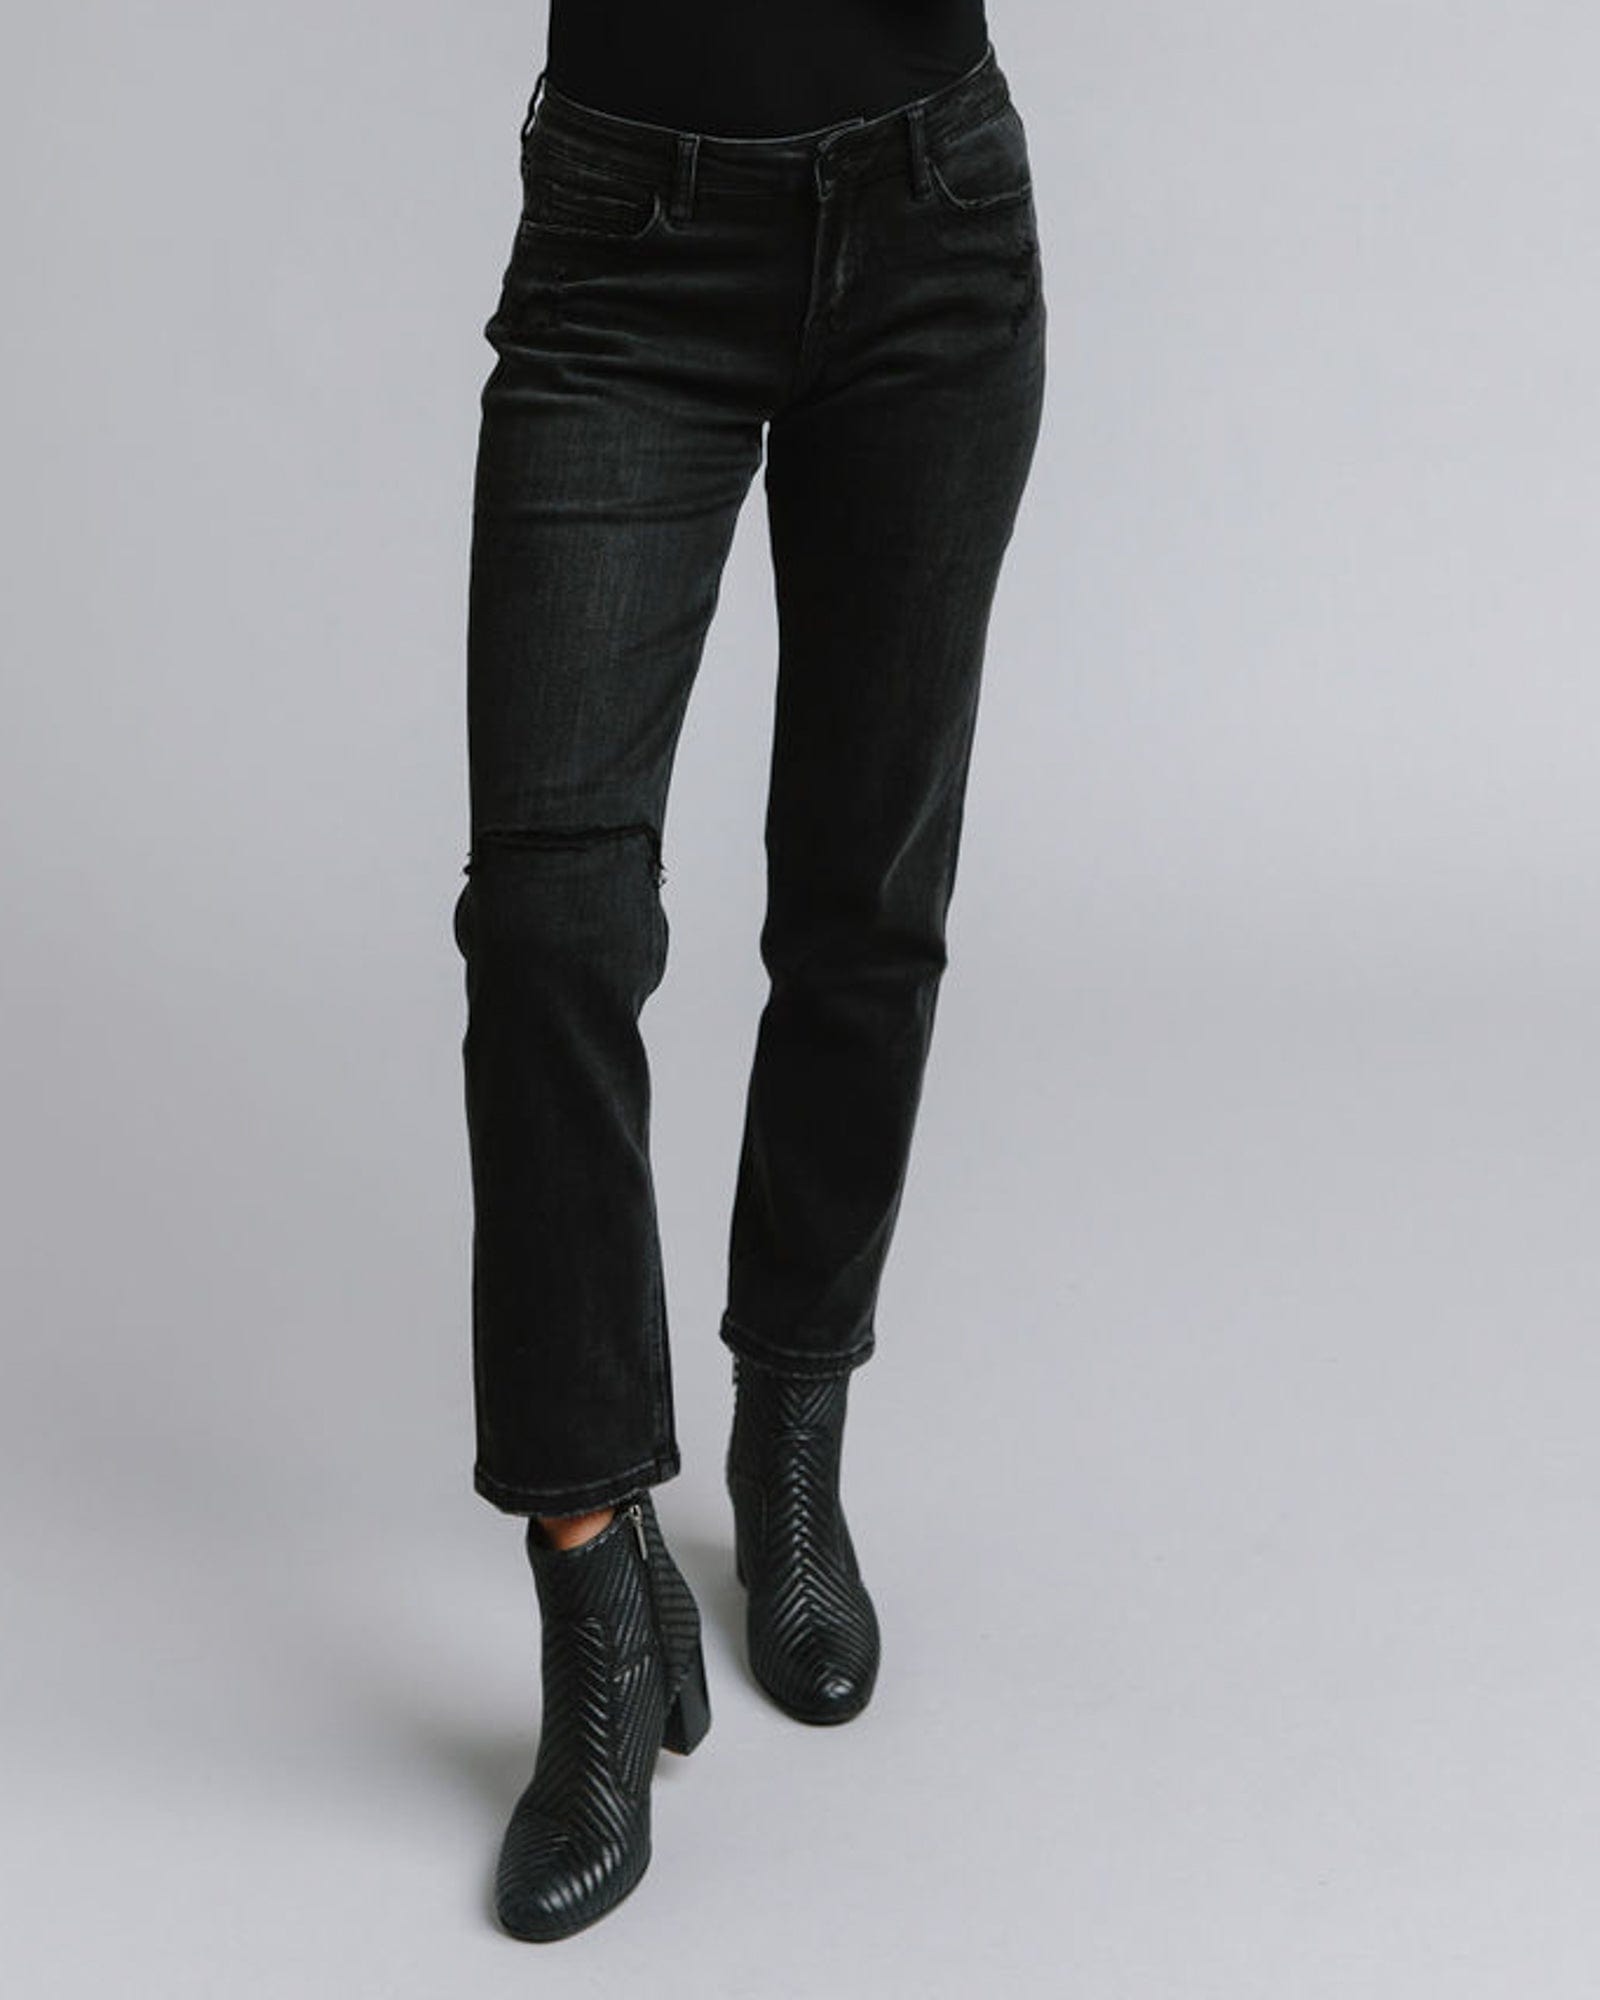 Woman in black mid-rise boyfriend jeans